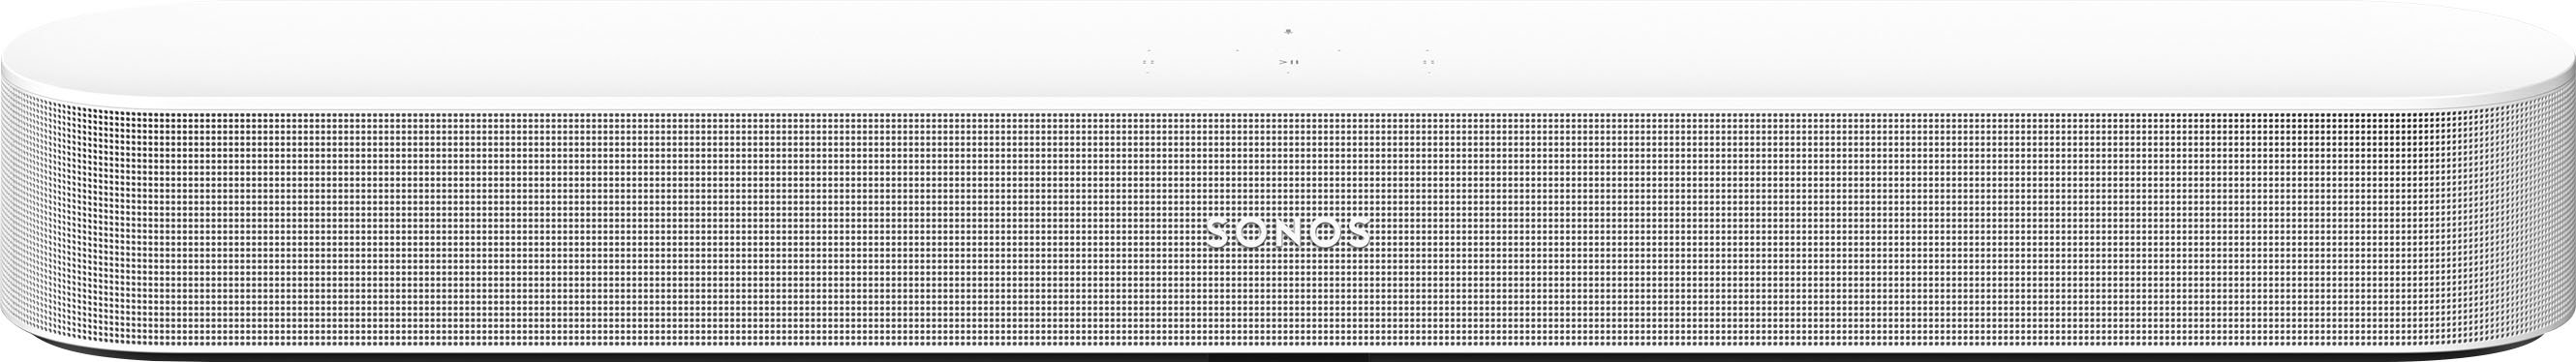 Sonos Beam (Gen 2) White BEAM2US1 - Best Buy